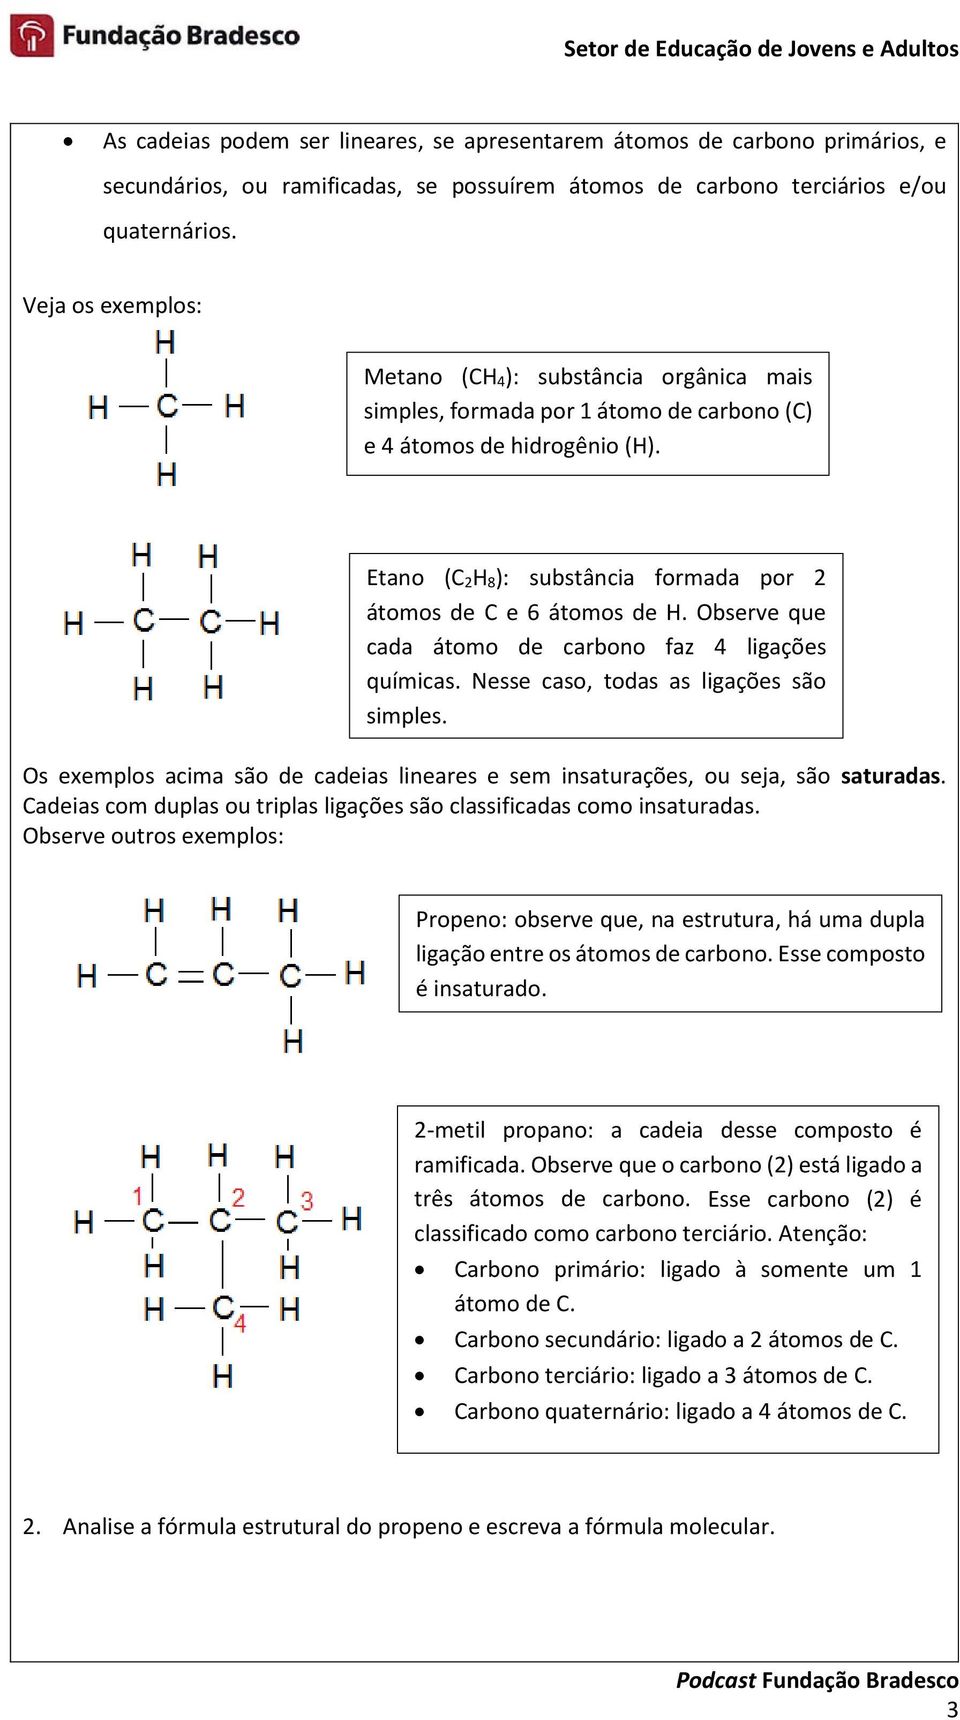 Etano (C 2H 8): substância formada por 2 átomos de C e 6 átomos de H. Observe que cada átomo de carbono faz 4 ligações químicas. Nesse caso, todas as ligações são simples.